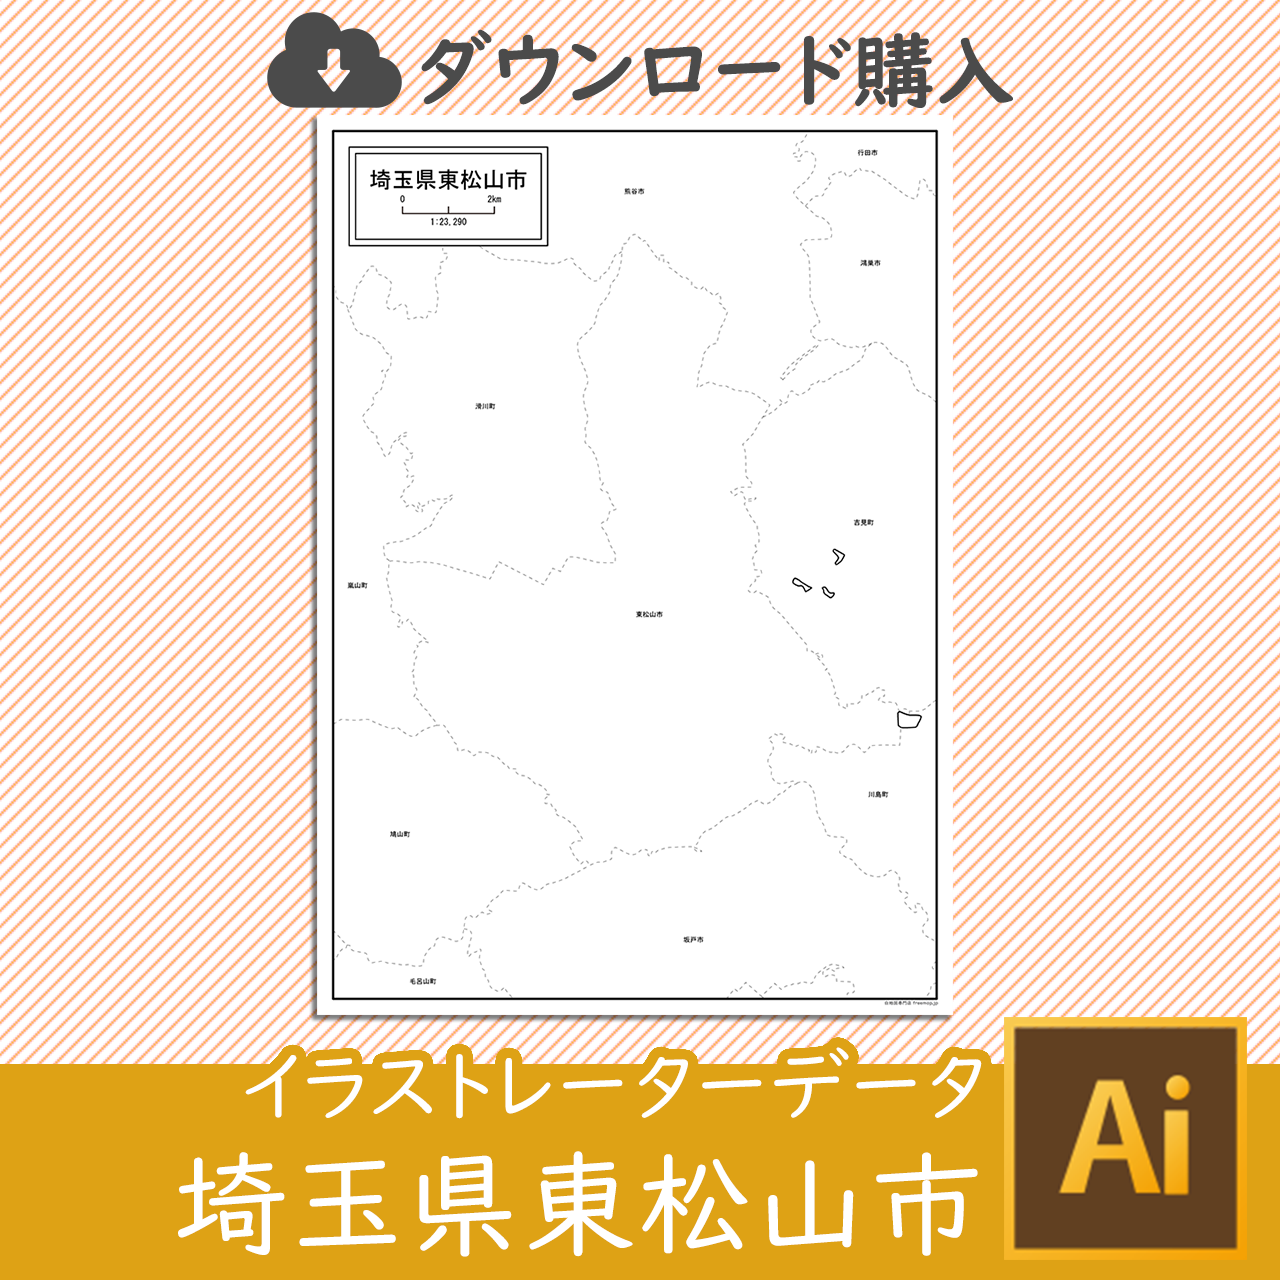 東松山市のaiデータのサムネイル画像